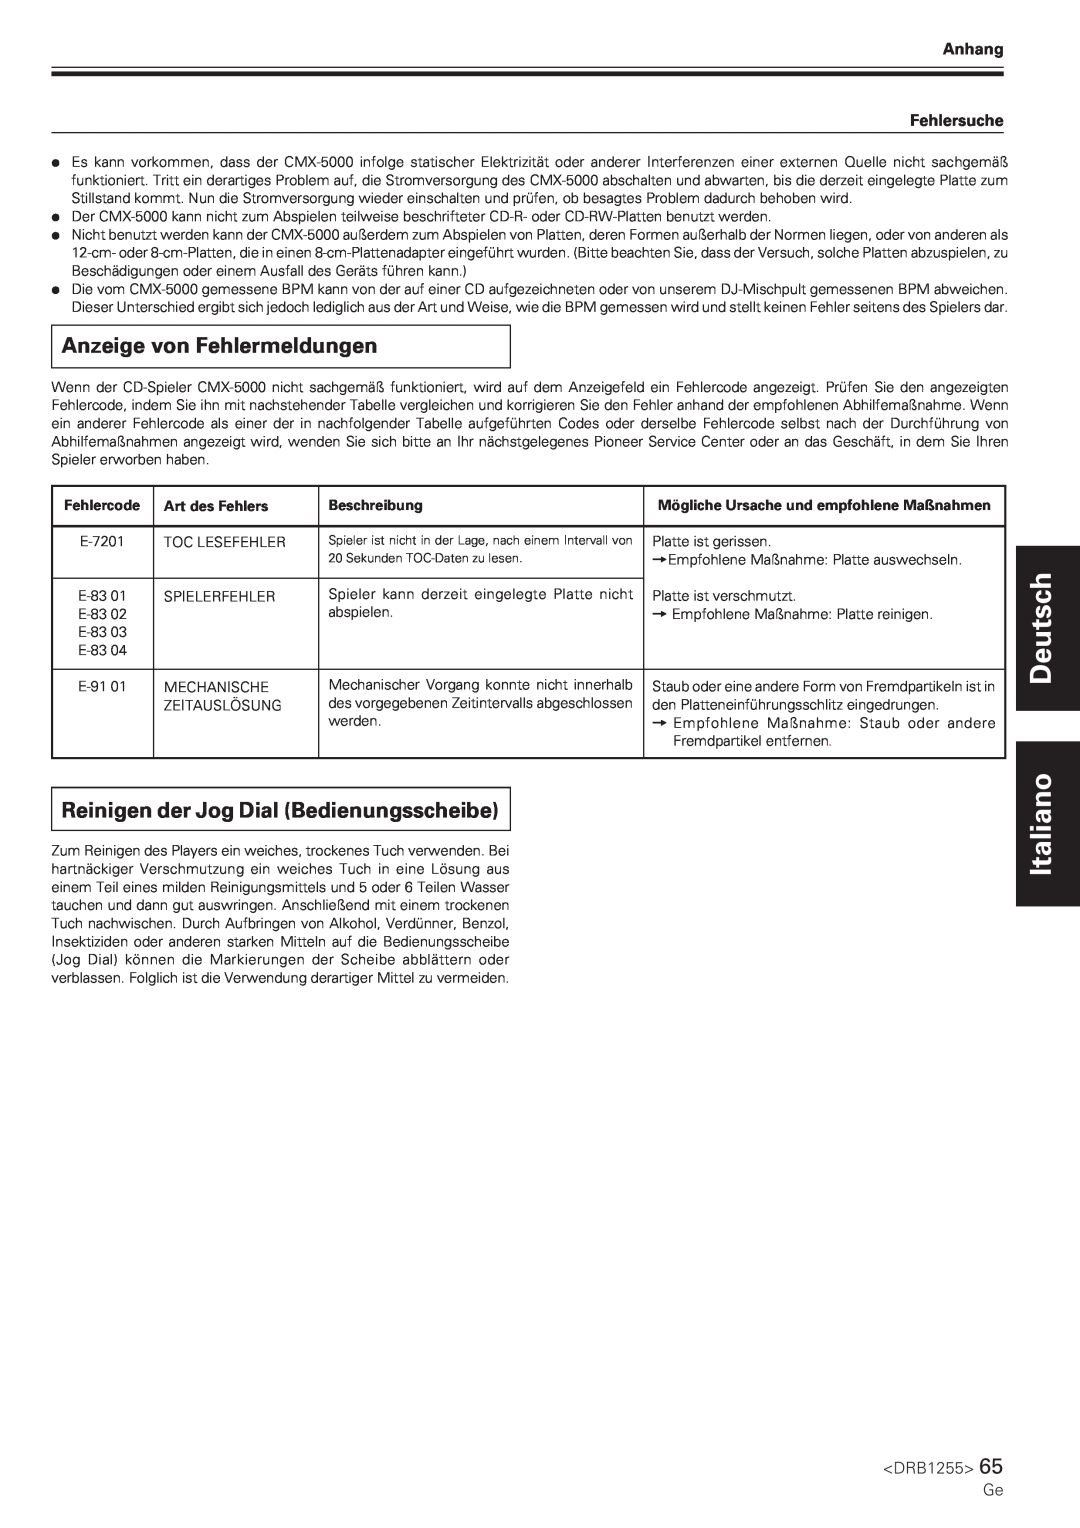 Pioneer CMX-5000 manual Anzeige von Fehlermeldungen, Reinigen der Jog Dial Bedienungsscheibe, Deutsch Italiano, <DRB1255> 